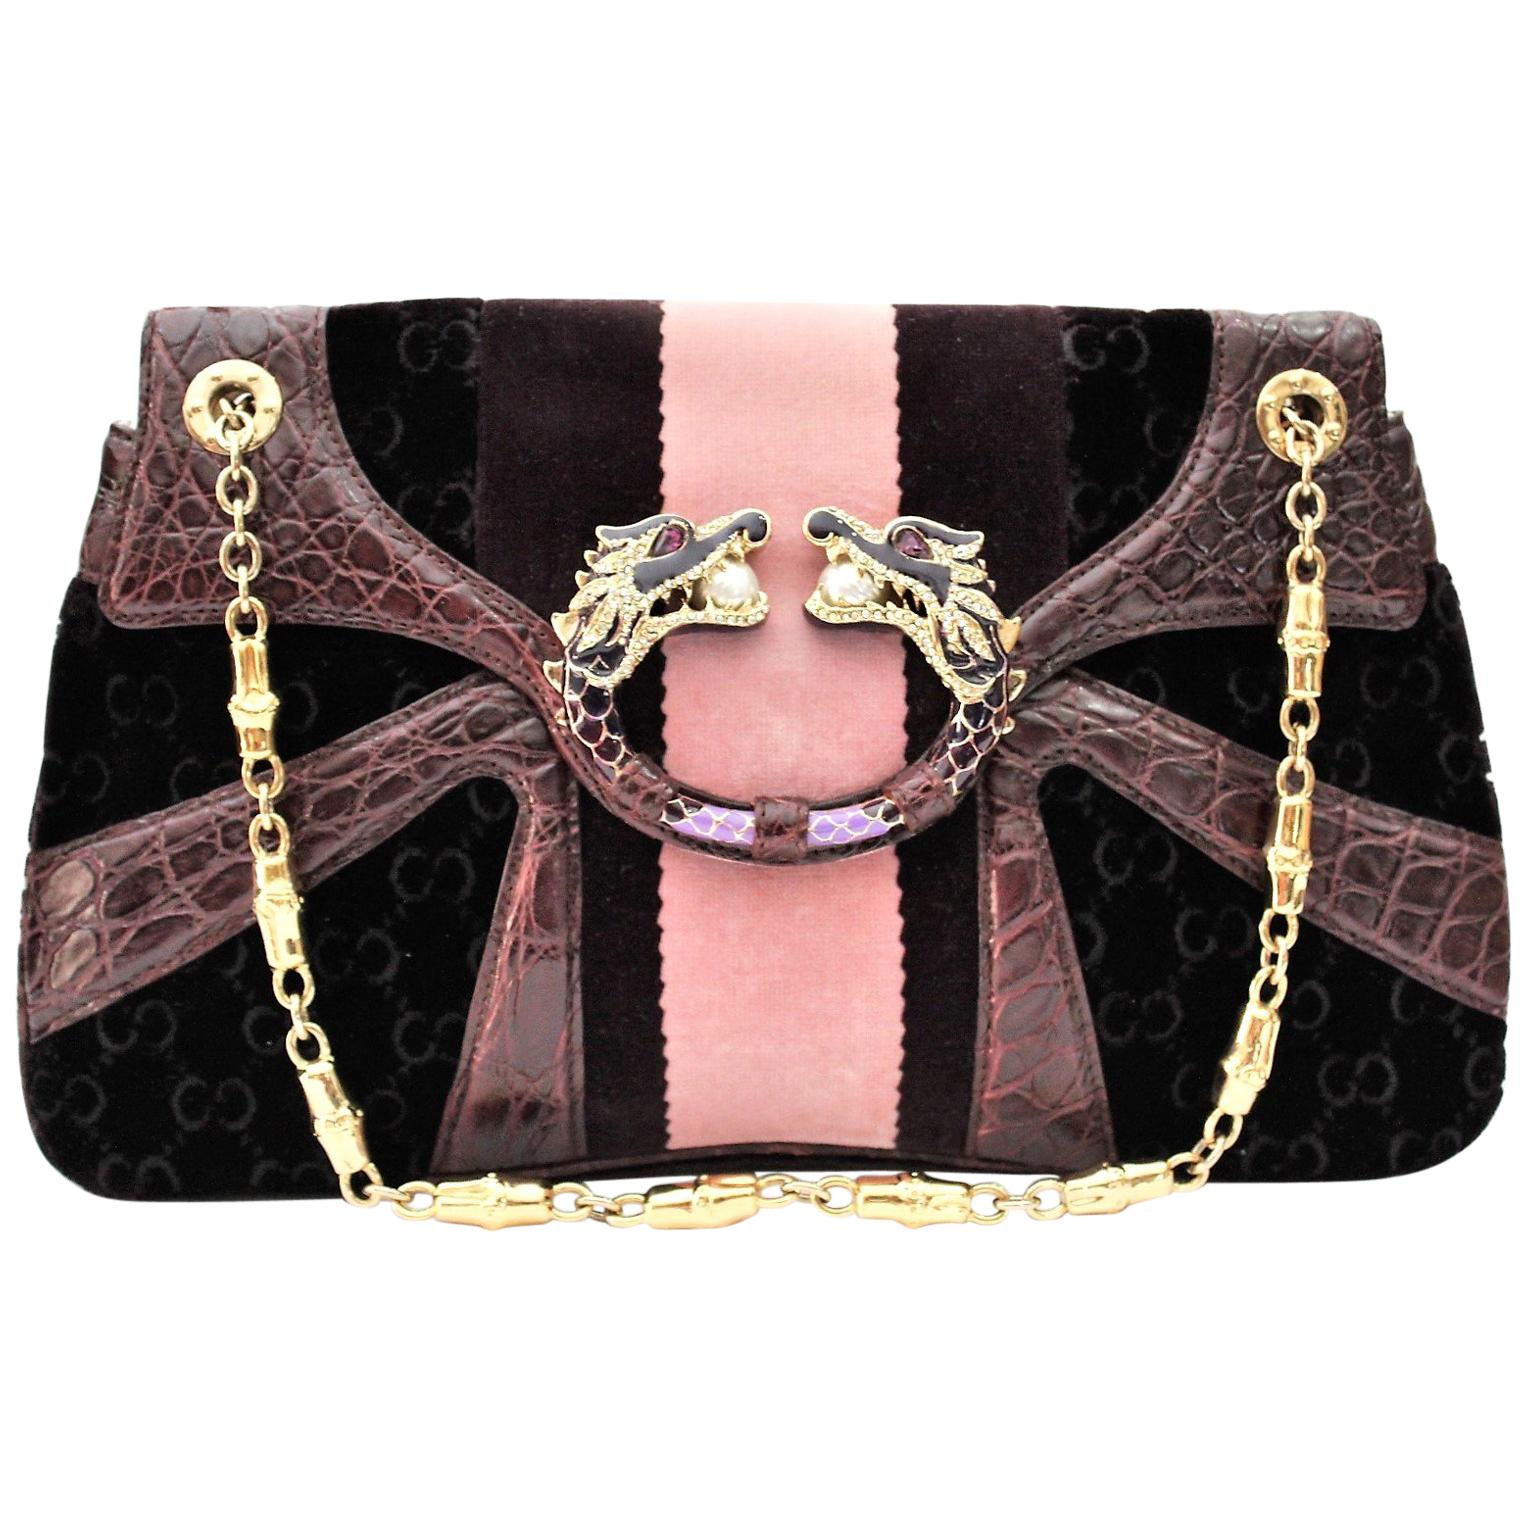 Gucci Limited Edition Violet GG Tom Ford Dragon Shoulder Bag